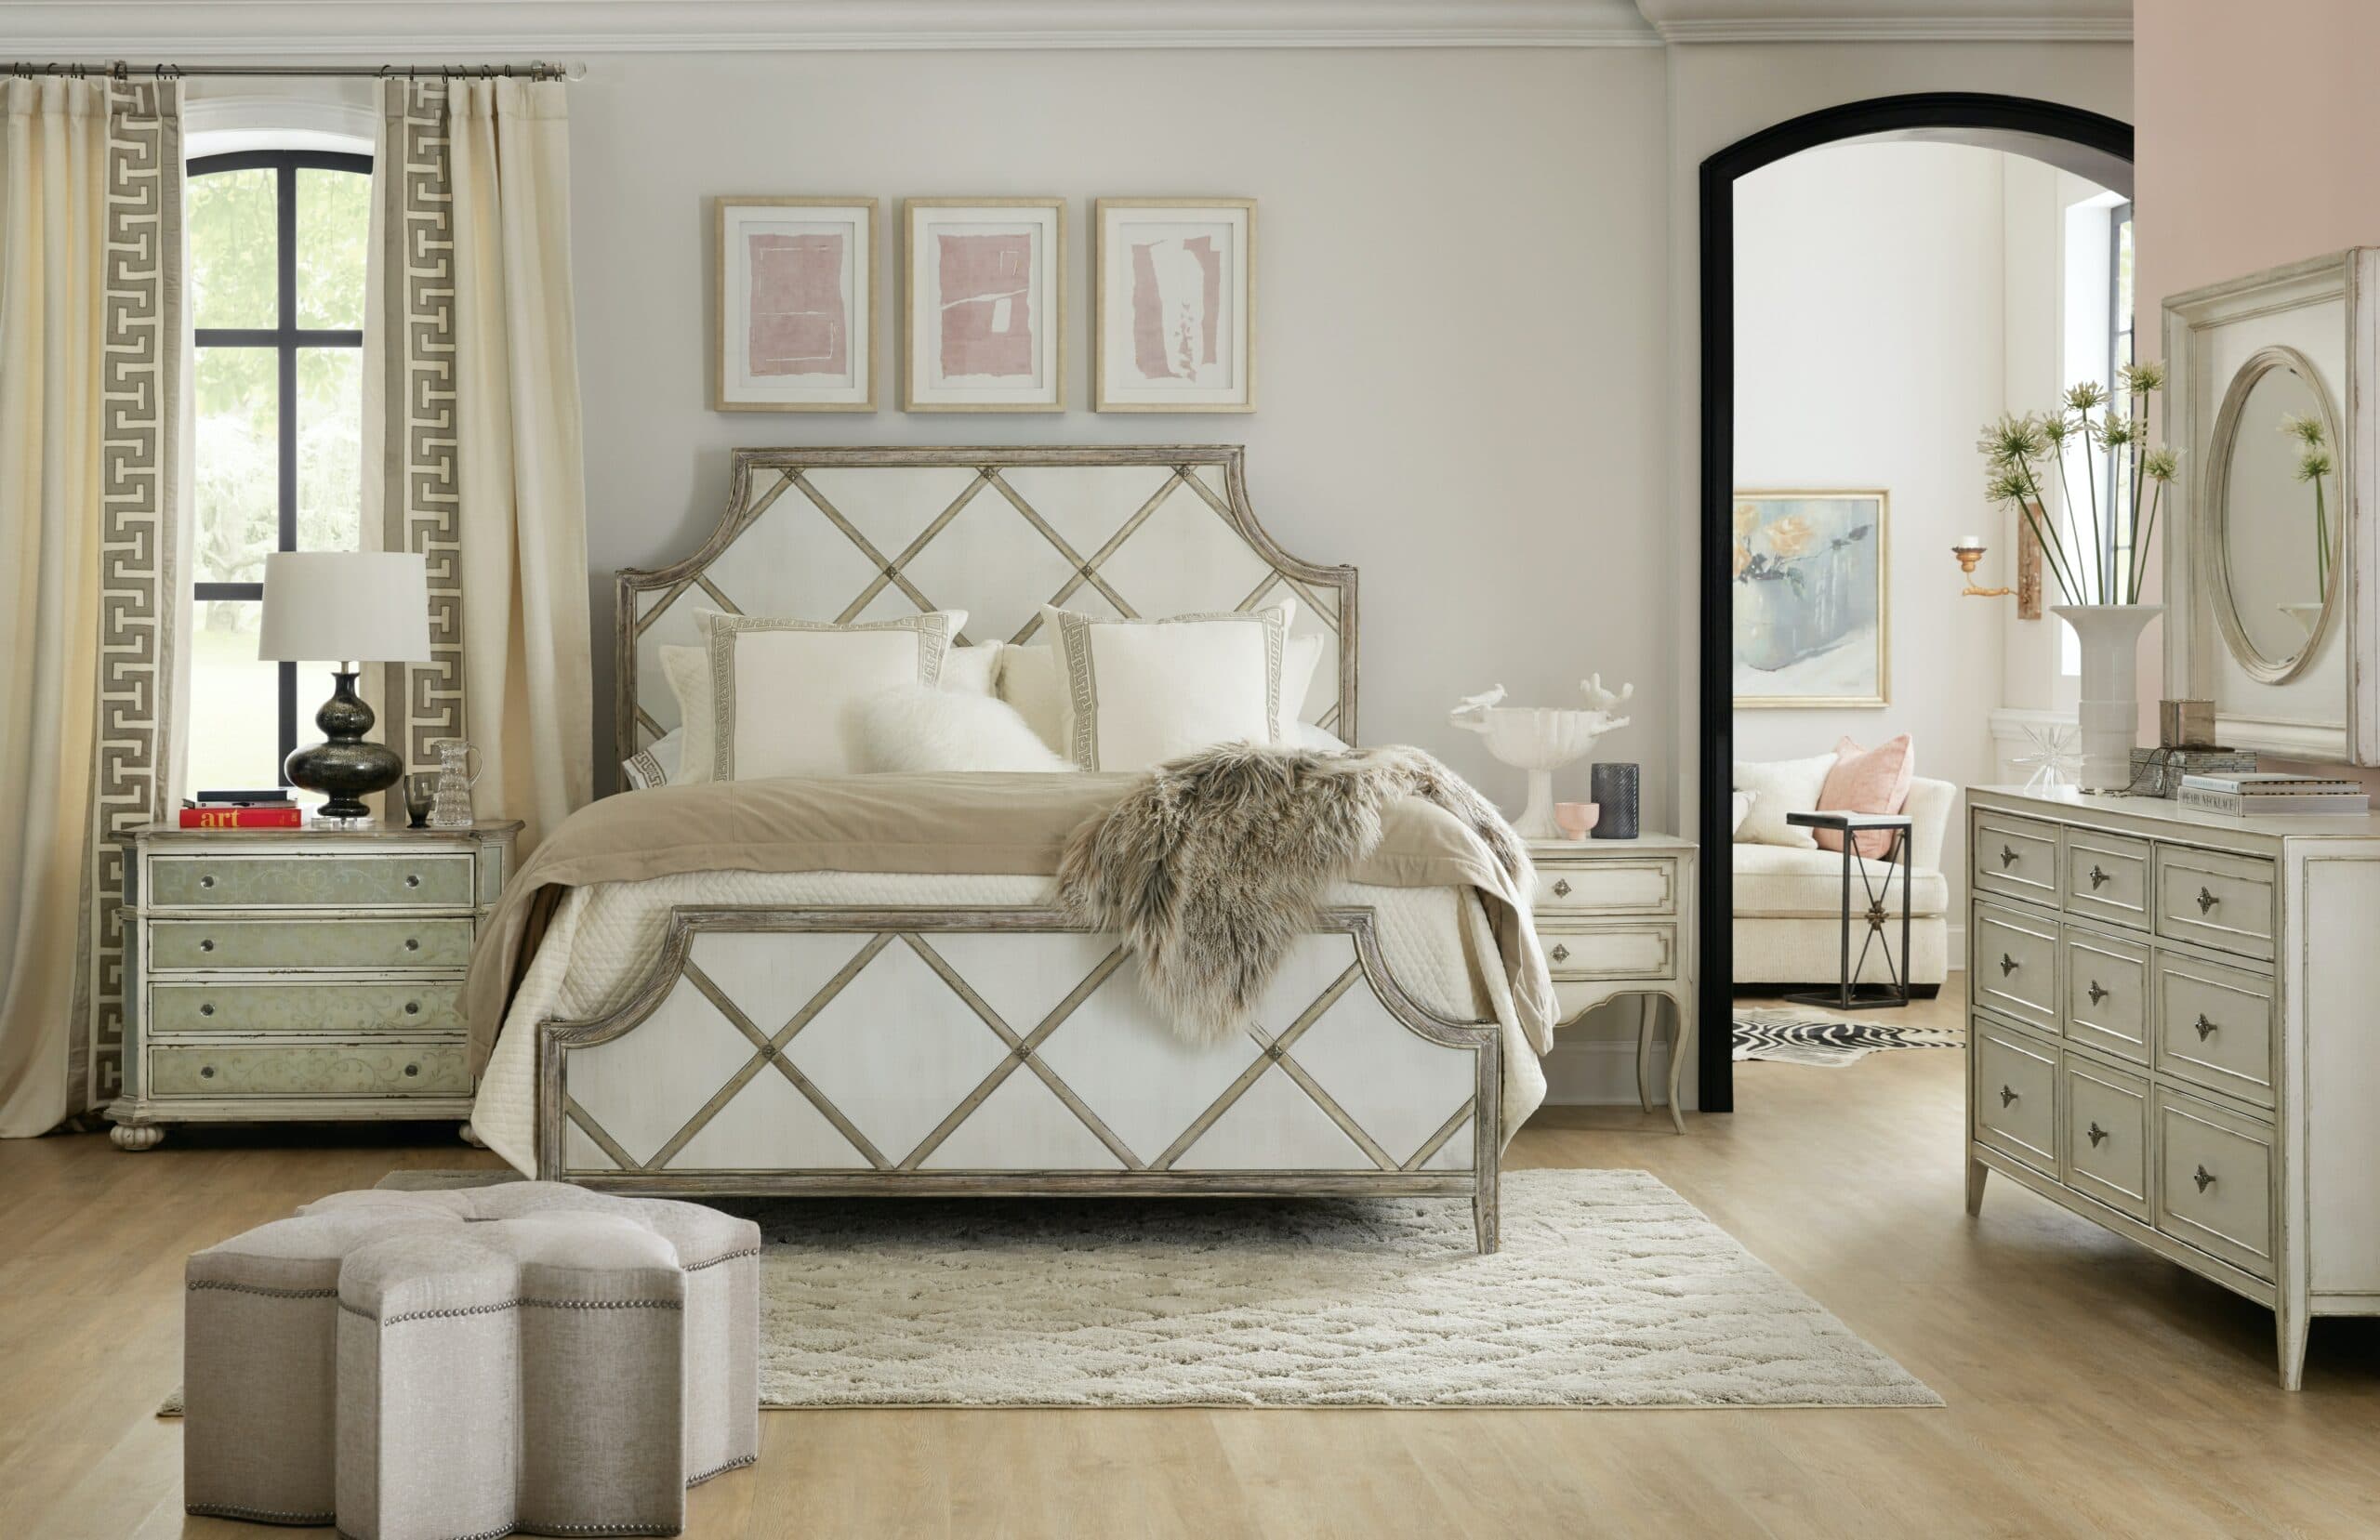 Hooker Furniture Collette King Bed